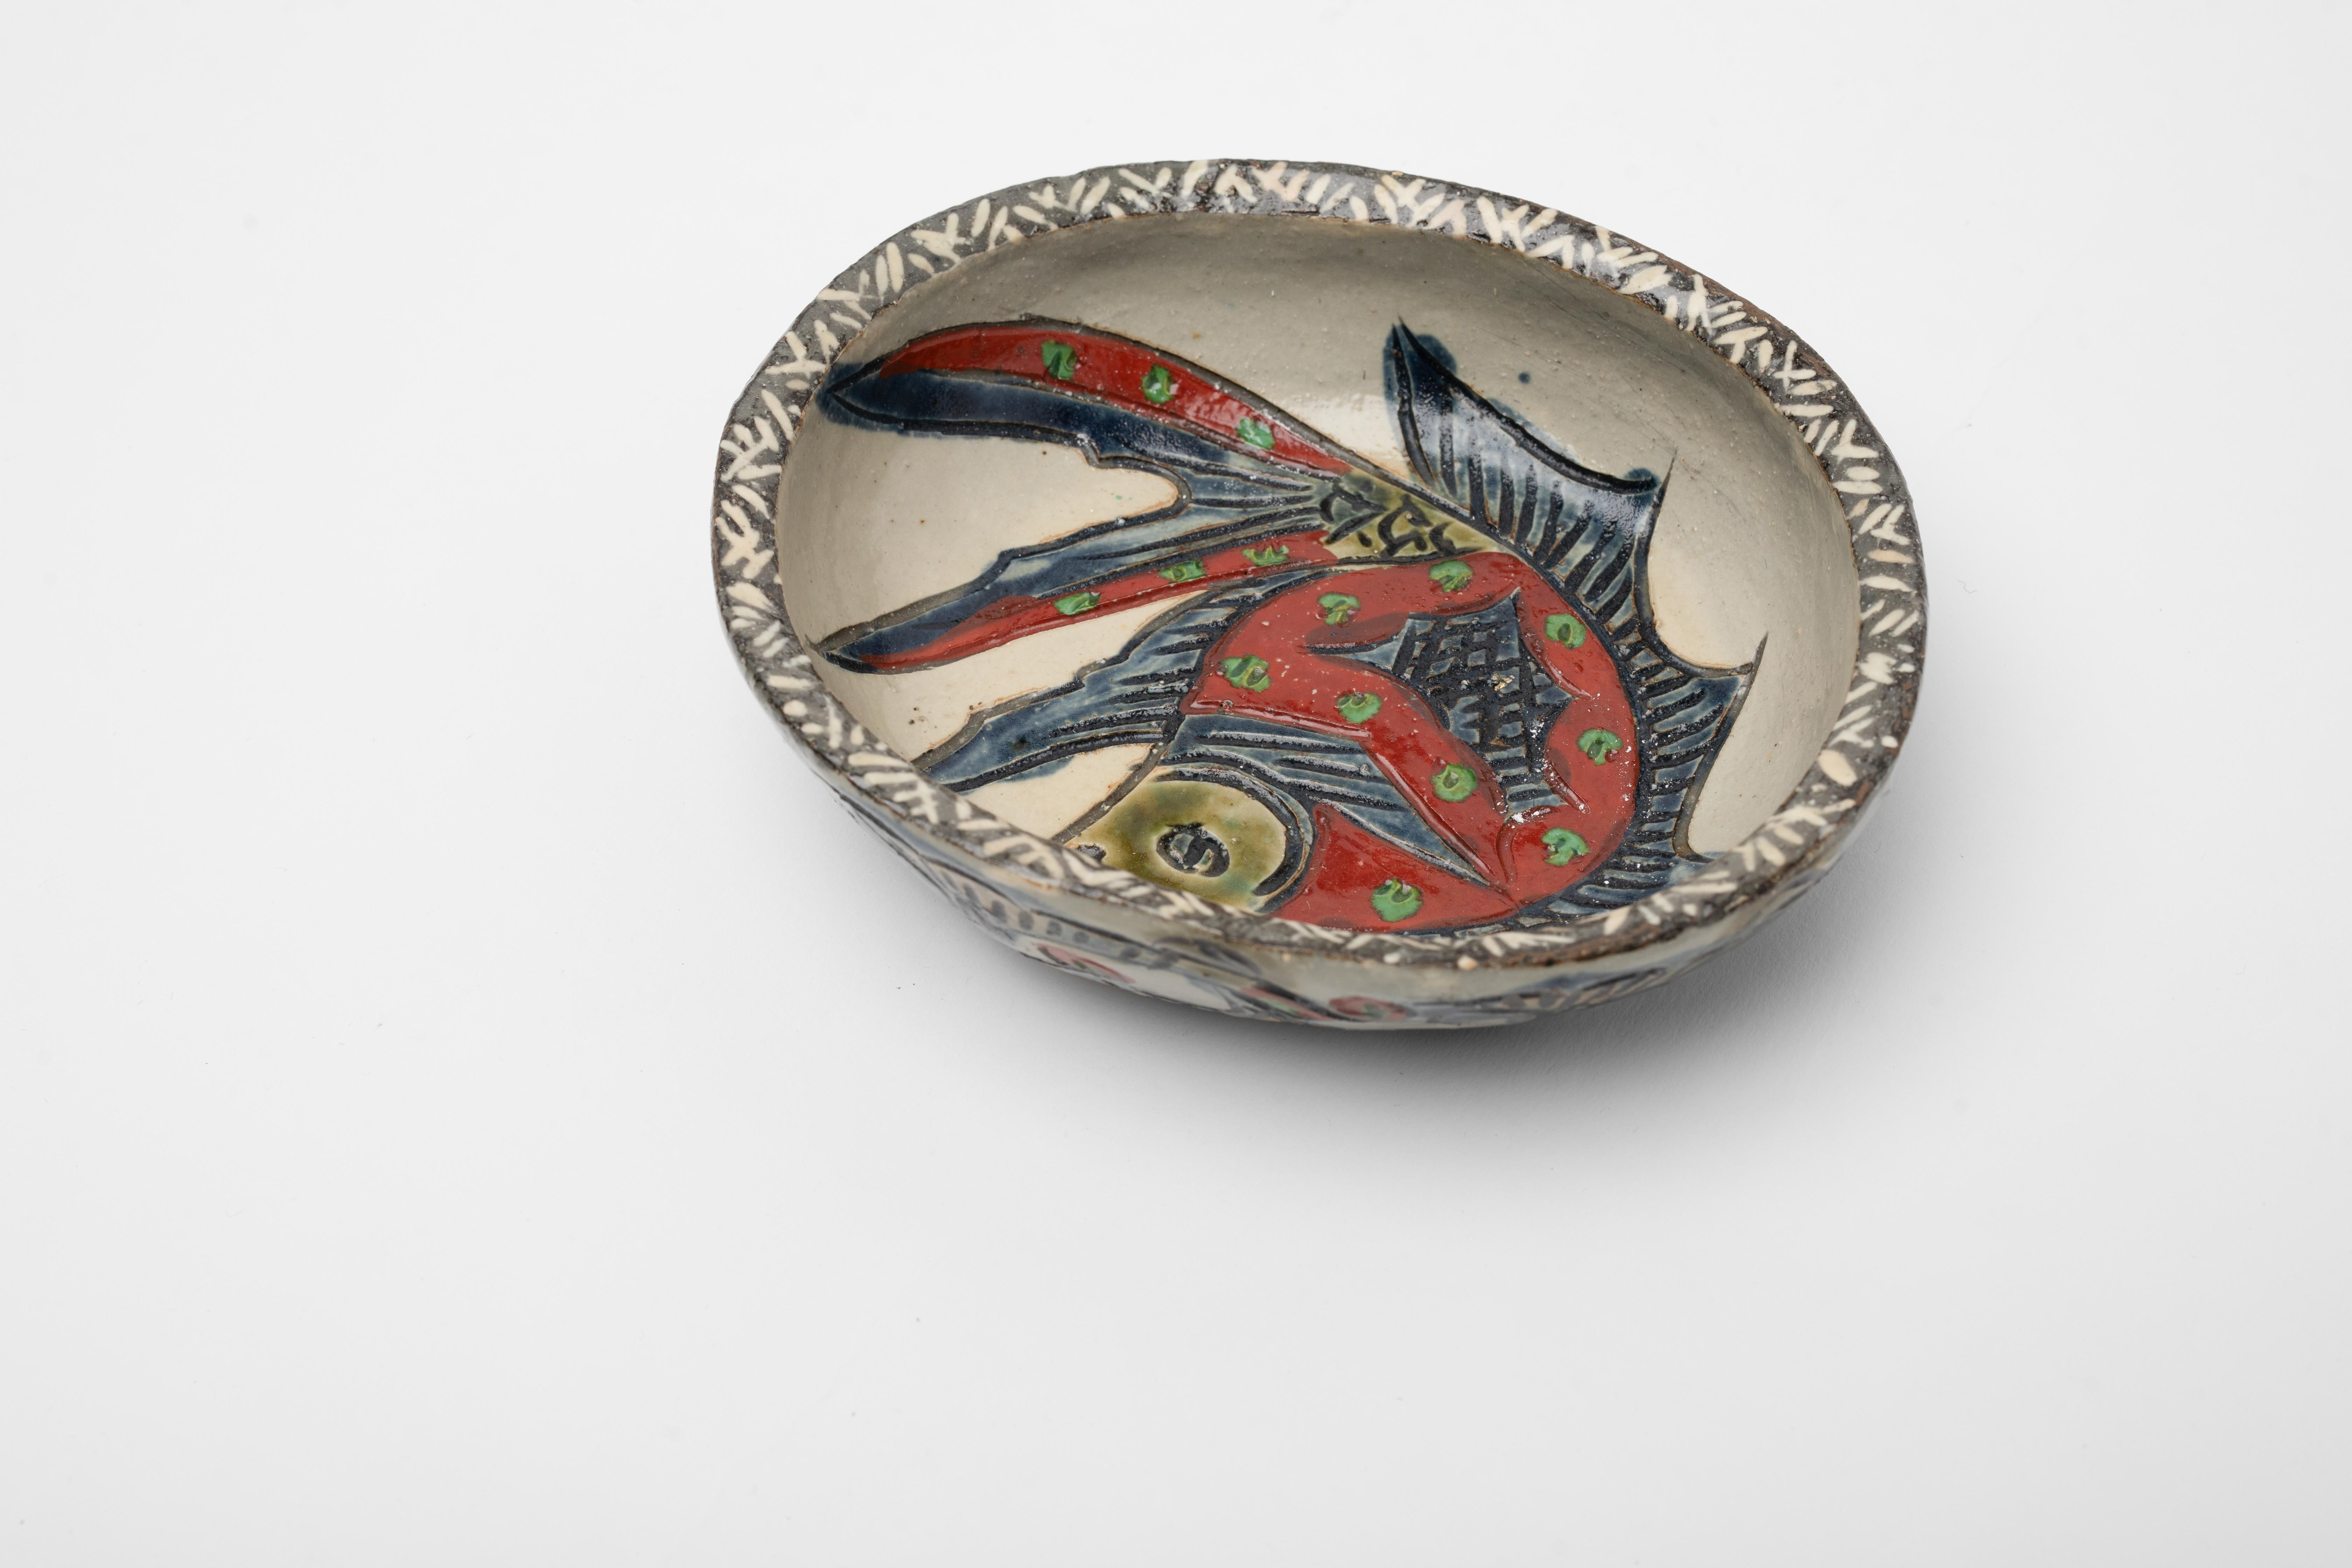 Unglaubliches Stück Tsuboya-yaki oder Tsuboya-Ware, die aus der Region Okinawa in Japan stammt. Höchstwahrscheinlich stammt es aus der Taisho-Periode (1912-1926), als die Popularität der Tsuboya-yaki-Volkskunstwaren wieder auflebte.

Die Ikone des